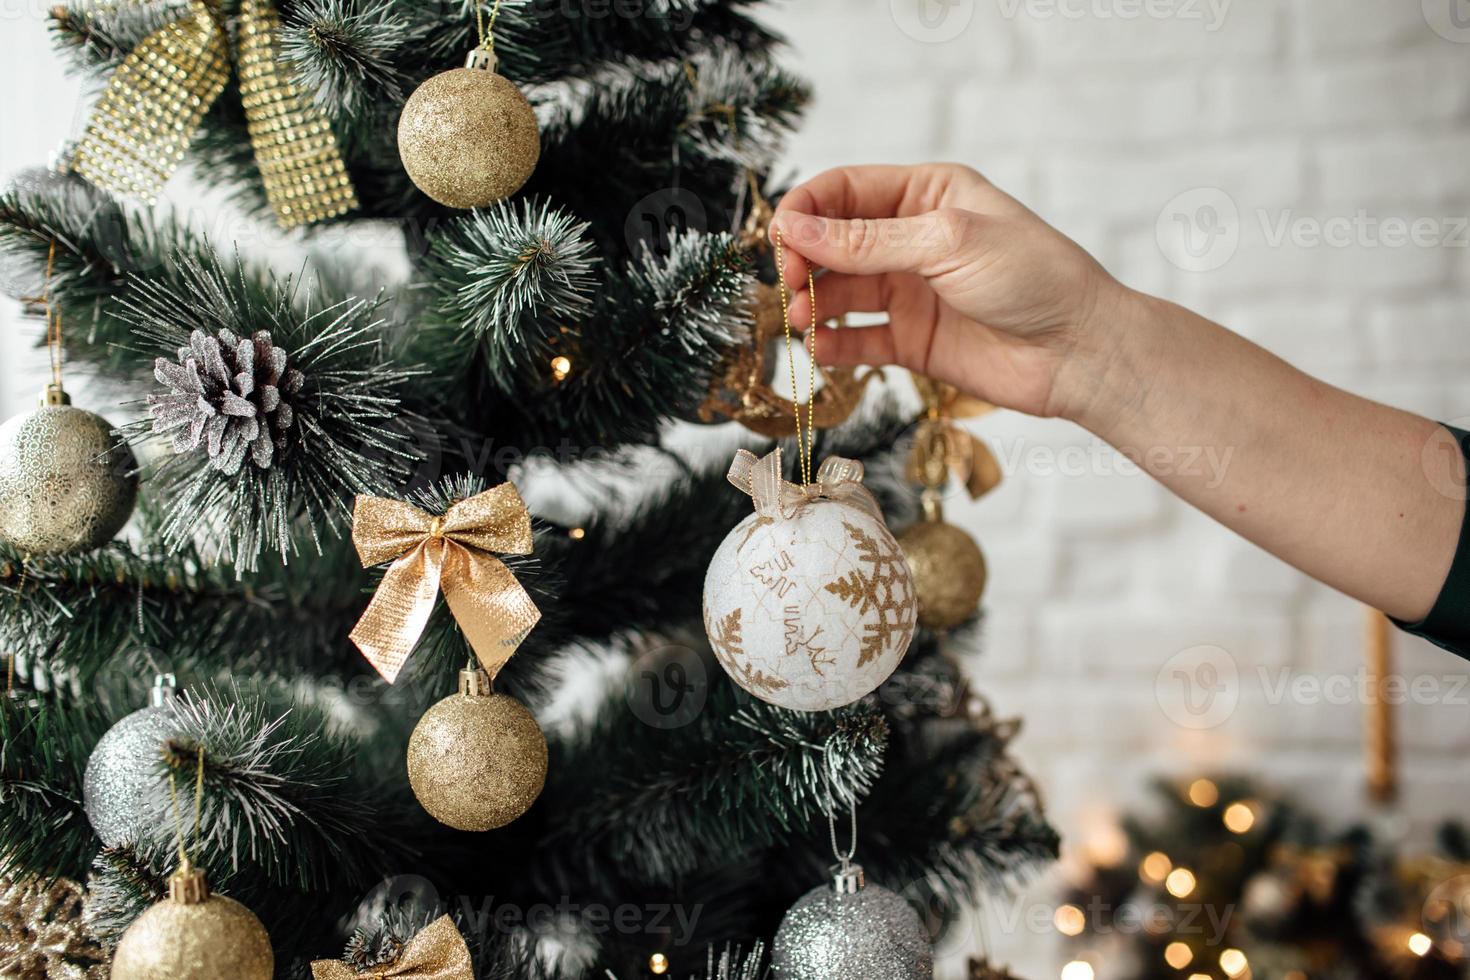 kerstboom decoratie op een witte bakstenen achtergrond. kerstmis en nieuwjaarsconcept. kerst decor foto